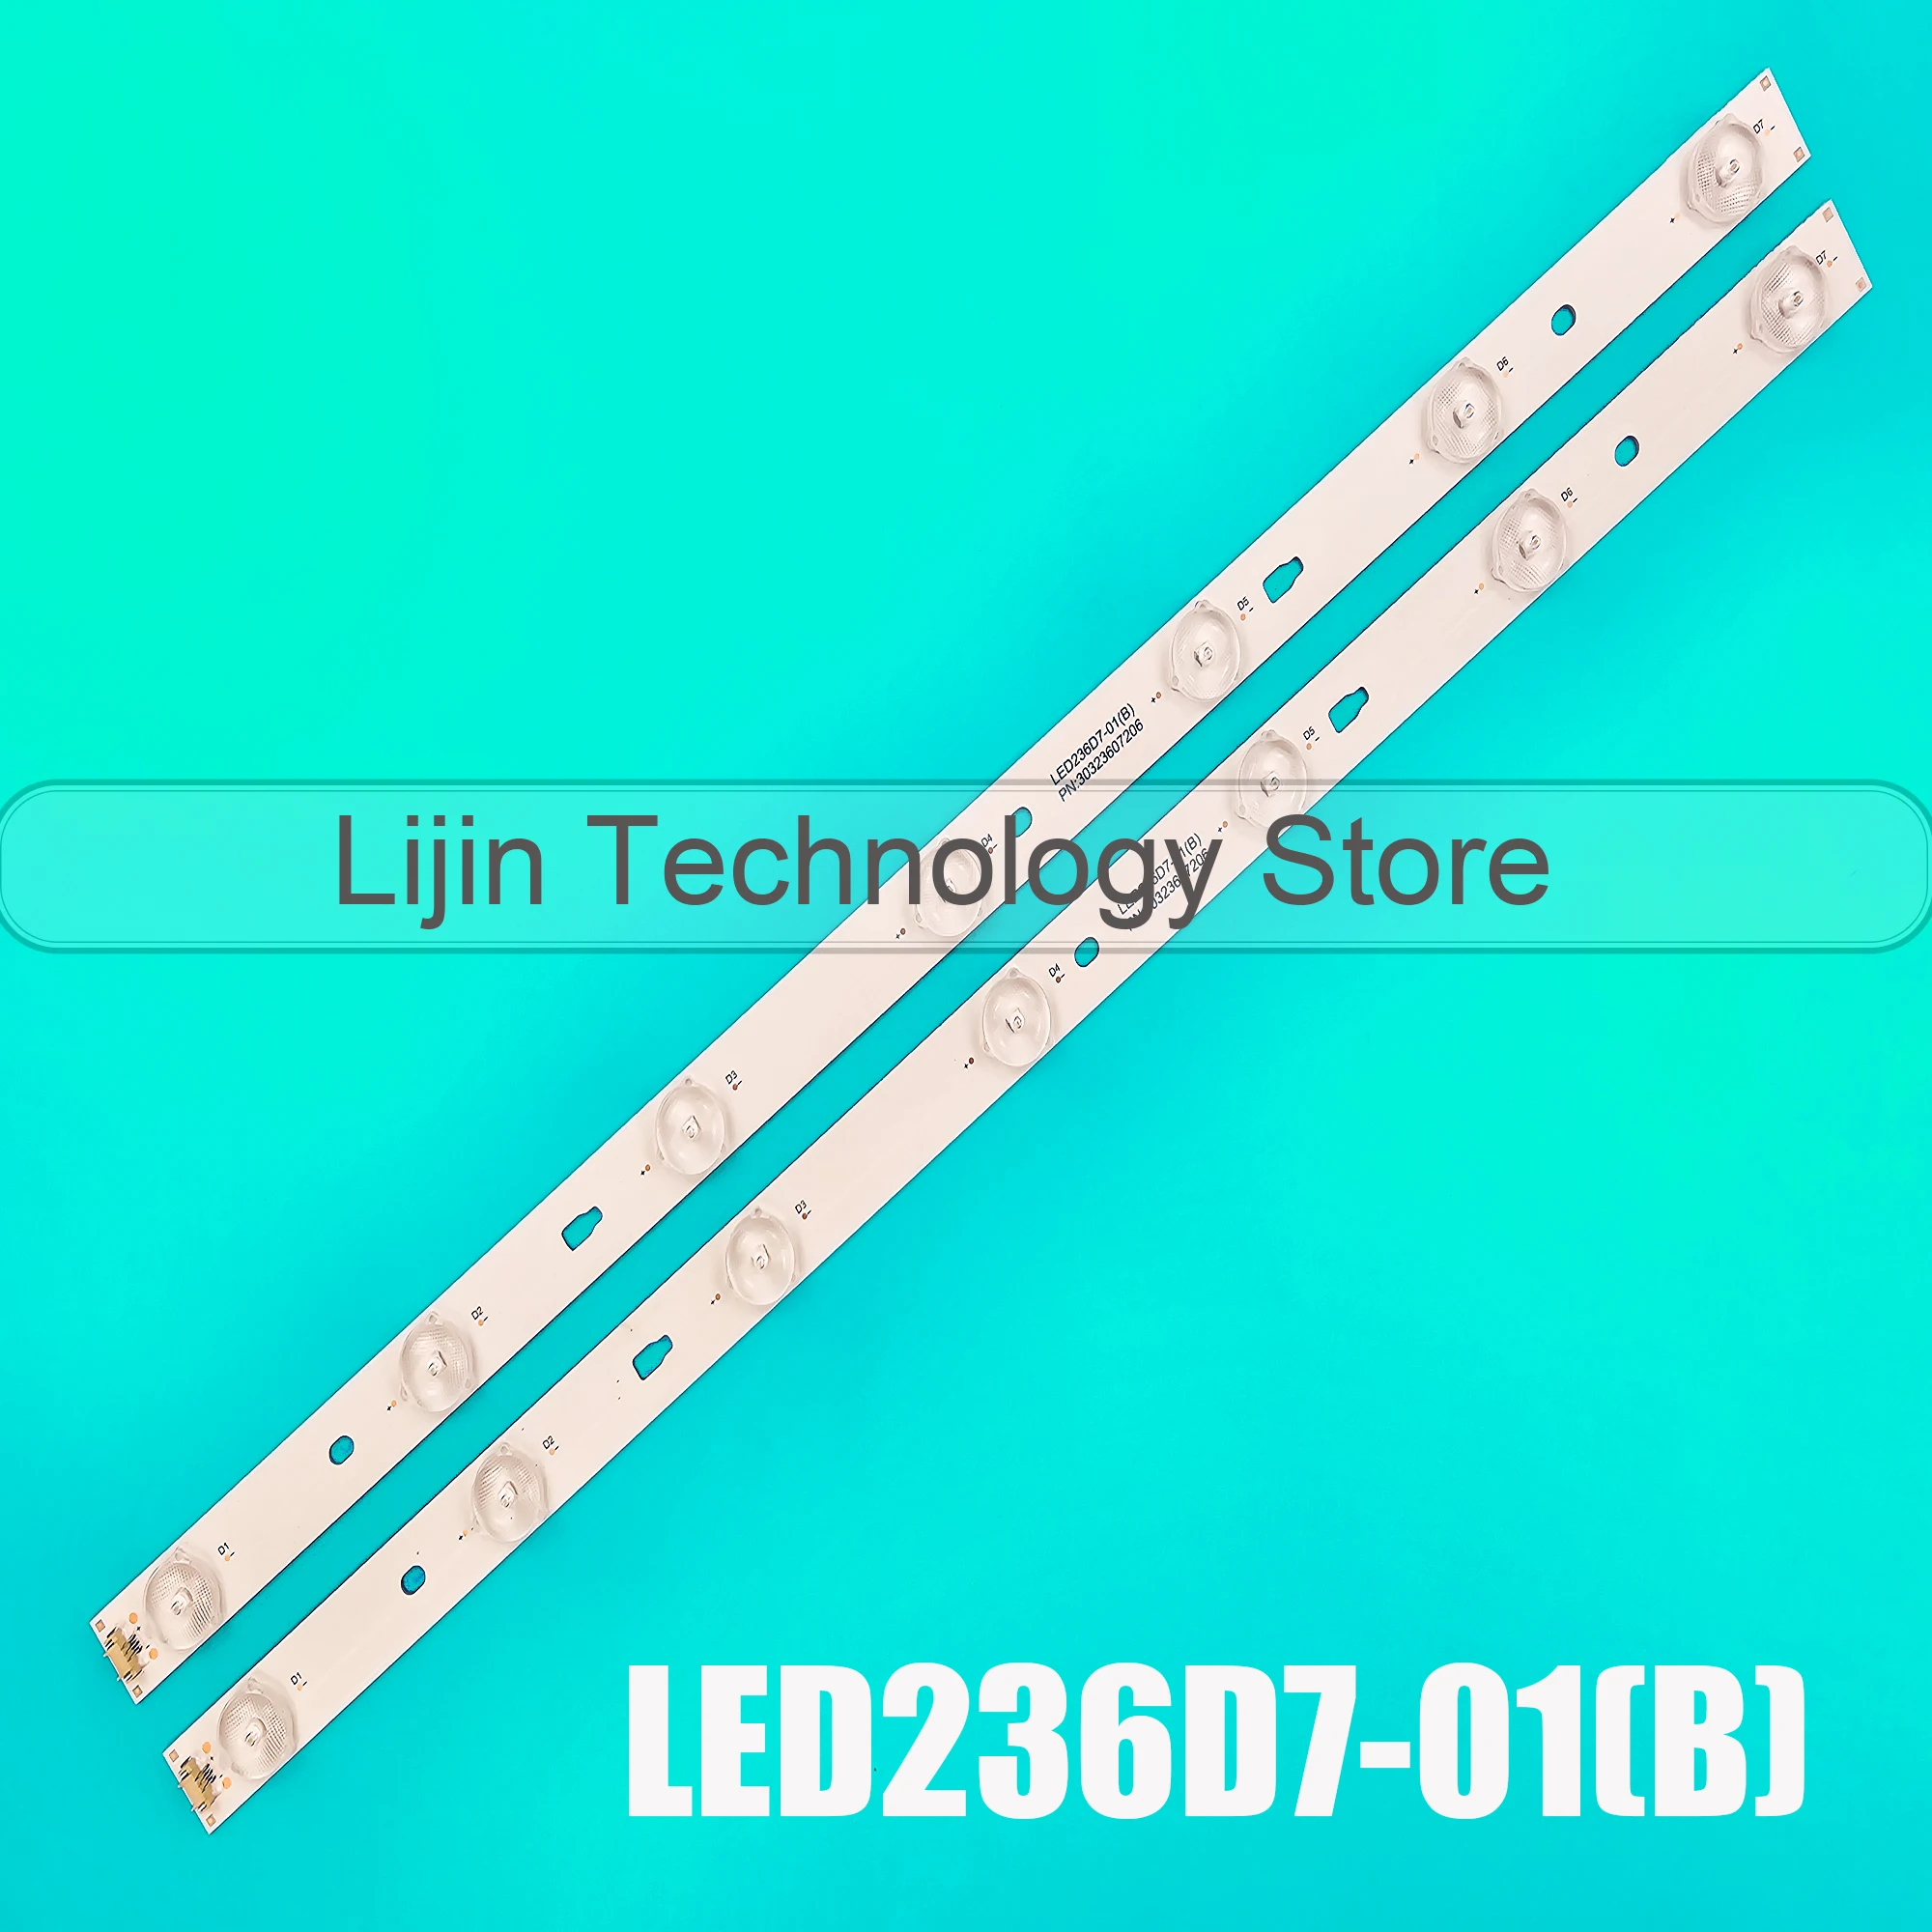 

LED Backlight Strips For JVC LT-24MU360 LT-24M450 LT-24M550 LE24B8000T LED236D7-01(B) V236BJ1-P01 TF-LED24S38T2 PLE-2405HD